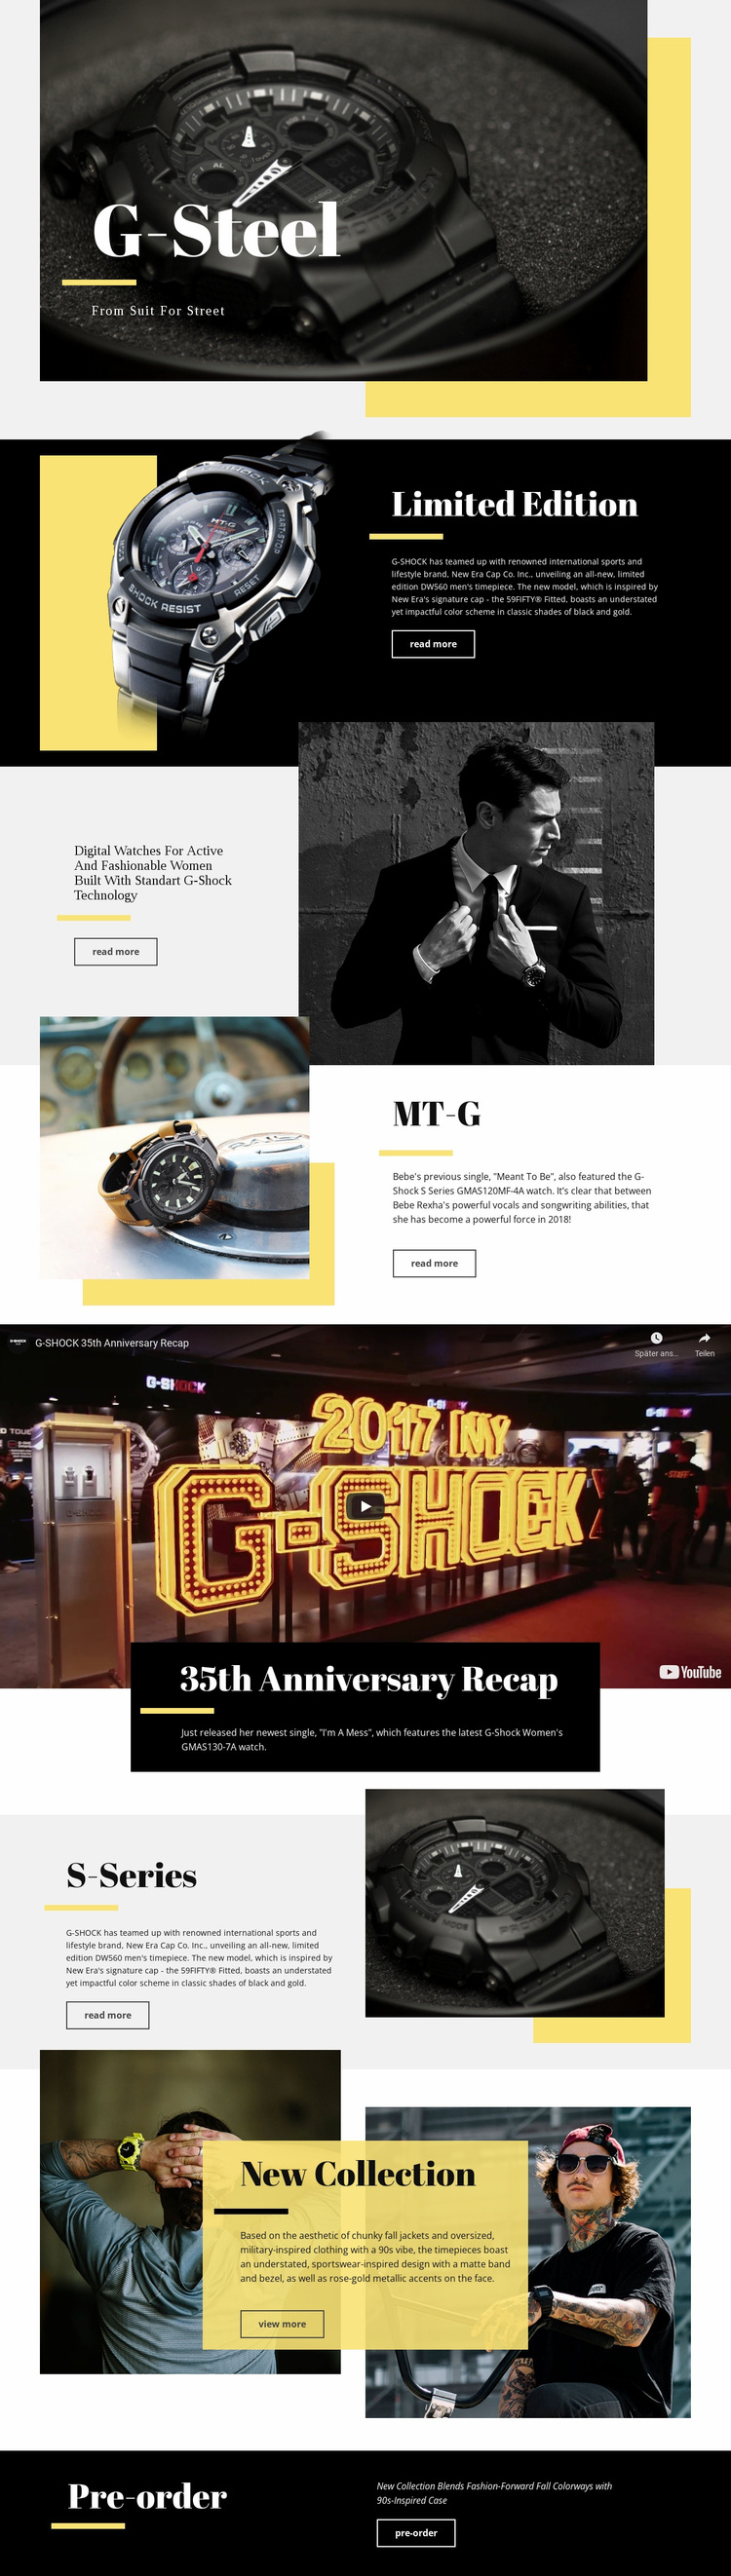 G-Steel Website Design